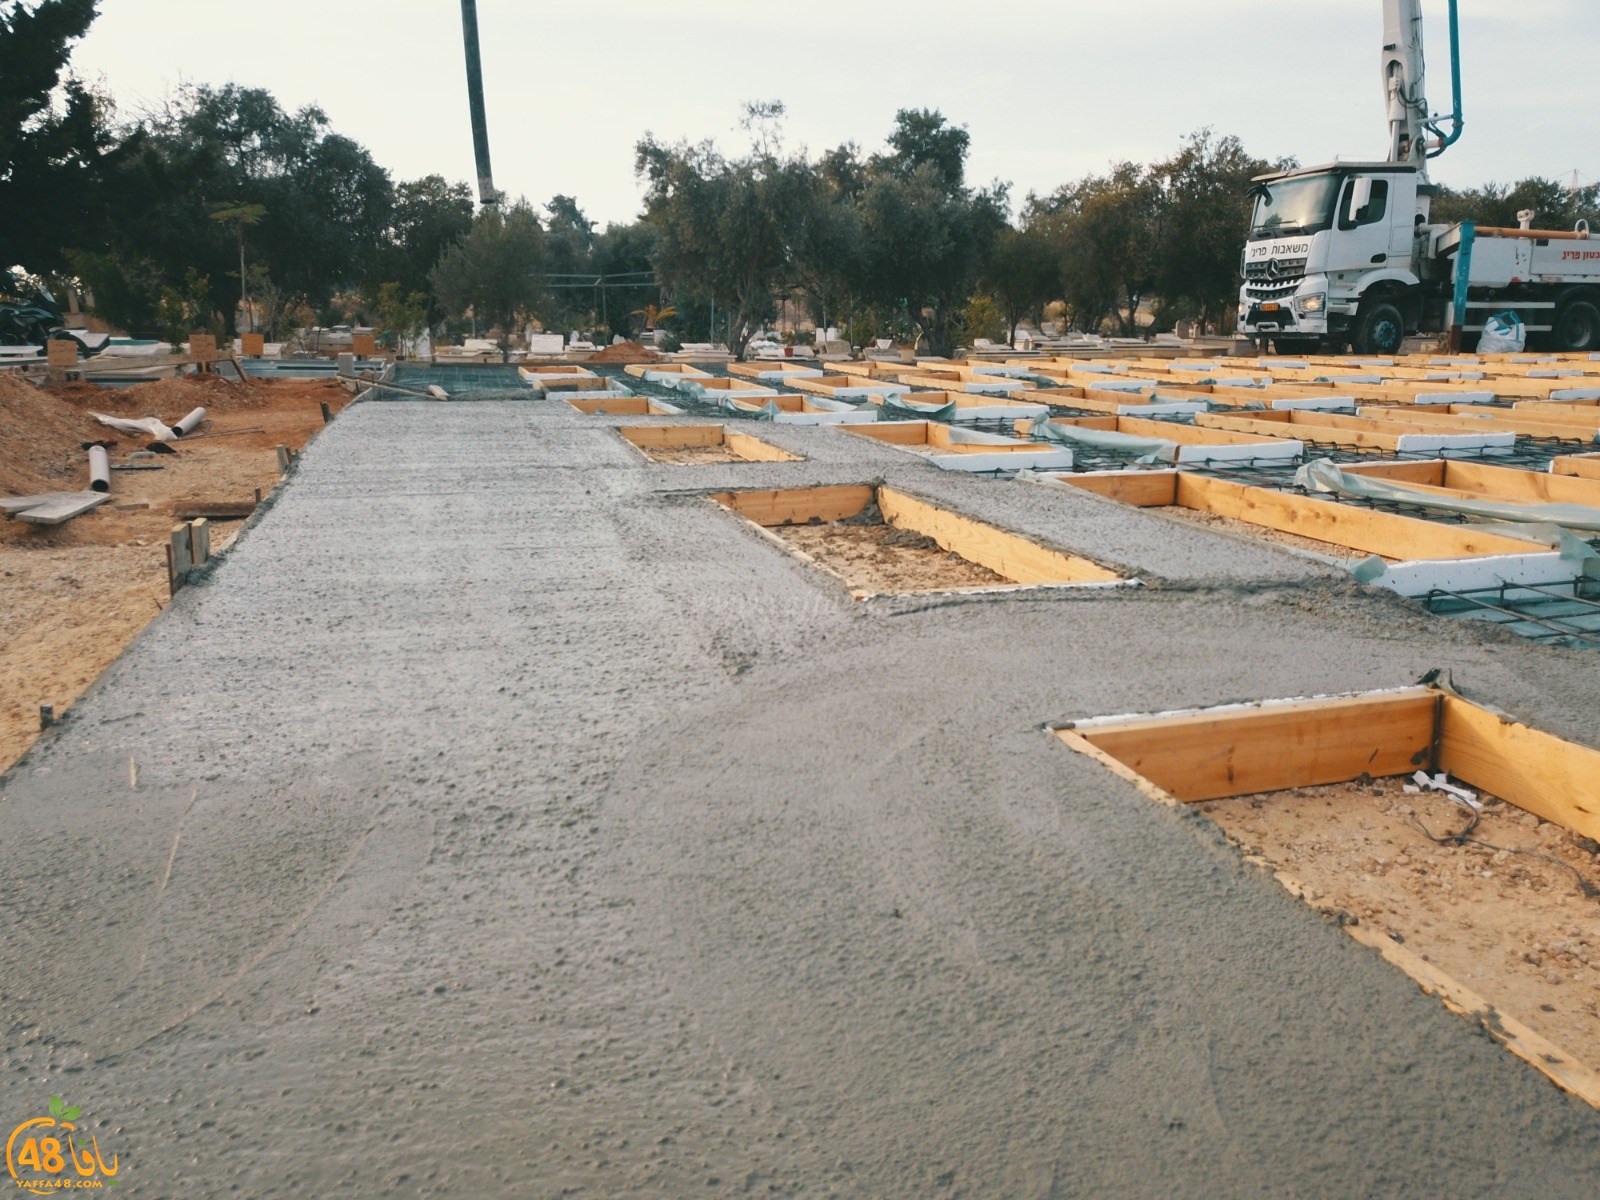 فيديو: المرحلة الثالثة - حملة بناء اضخم مسطح لدفن الموتى في طاسو ما زالت مستمرة